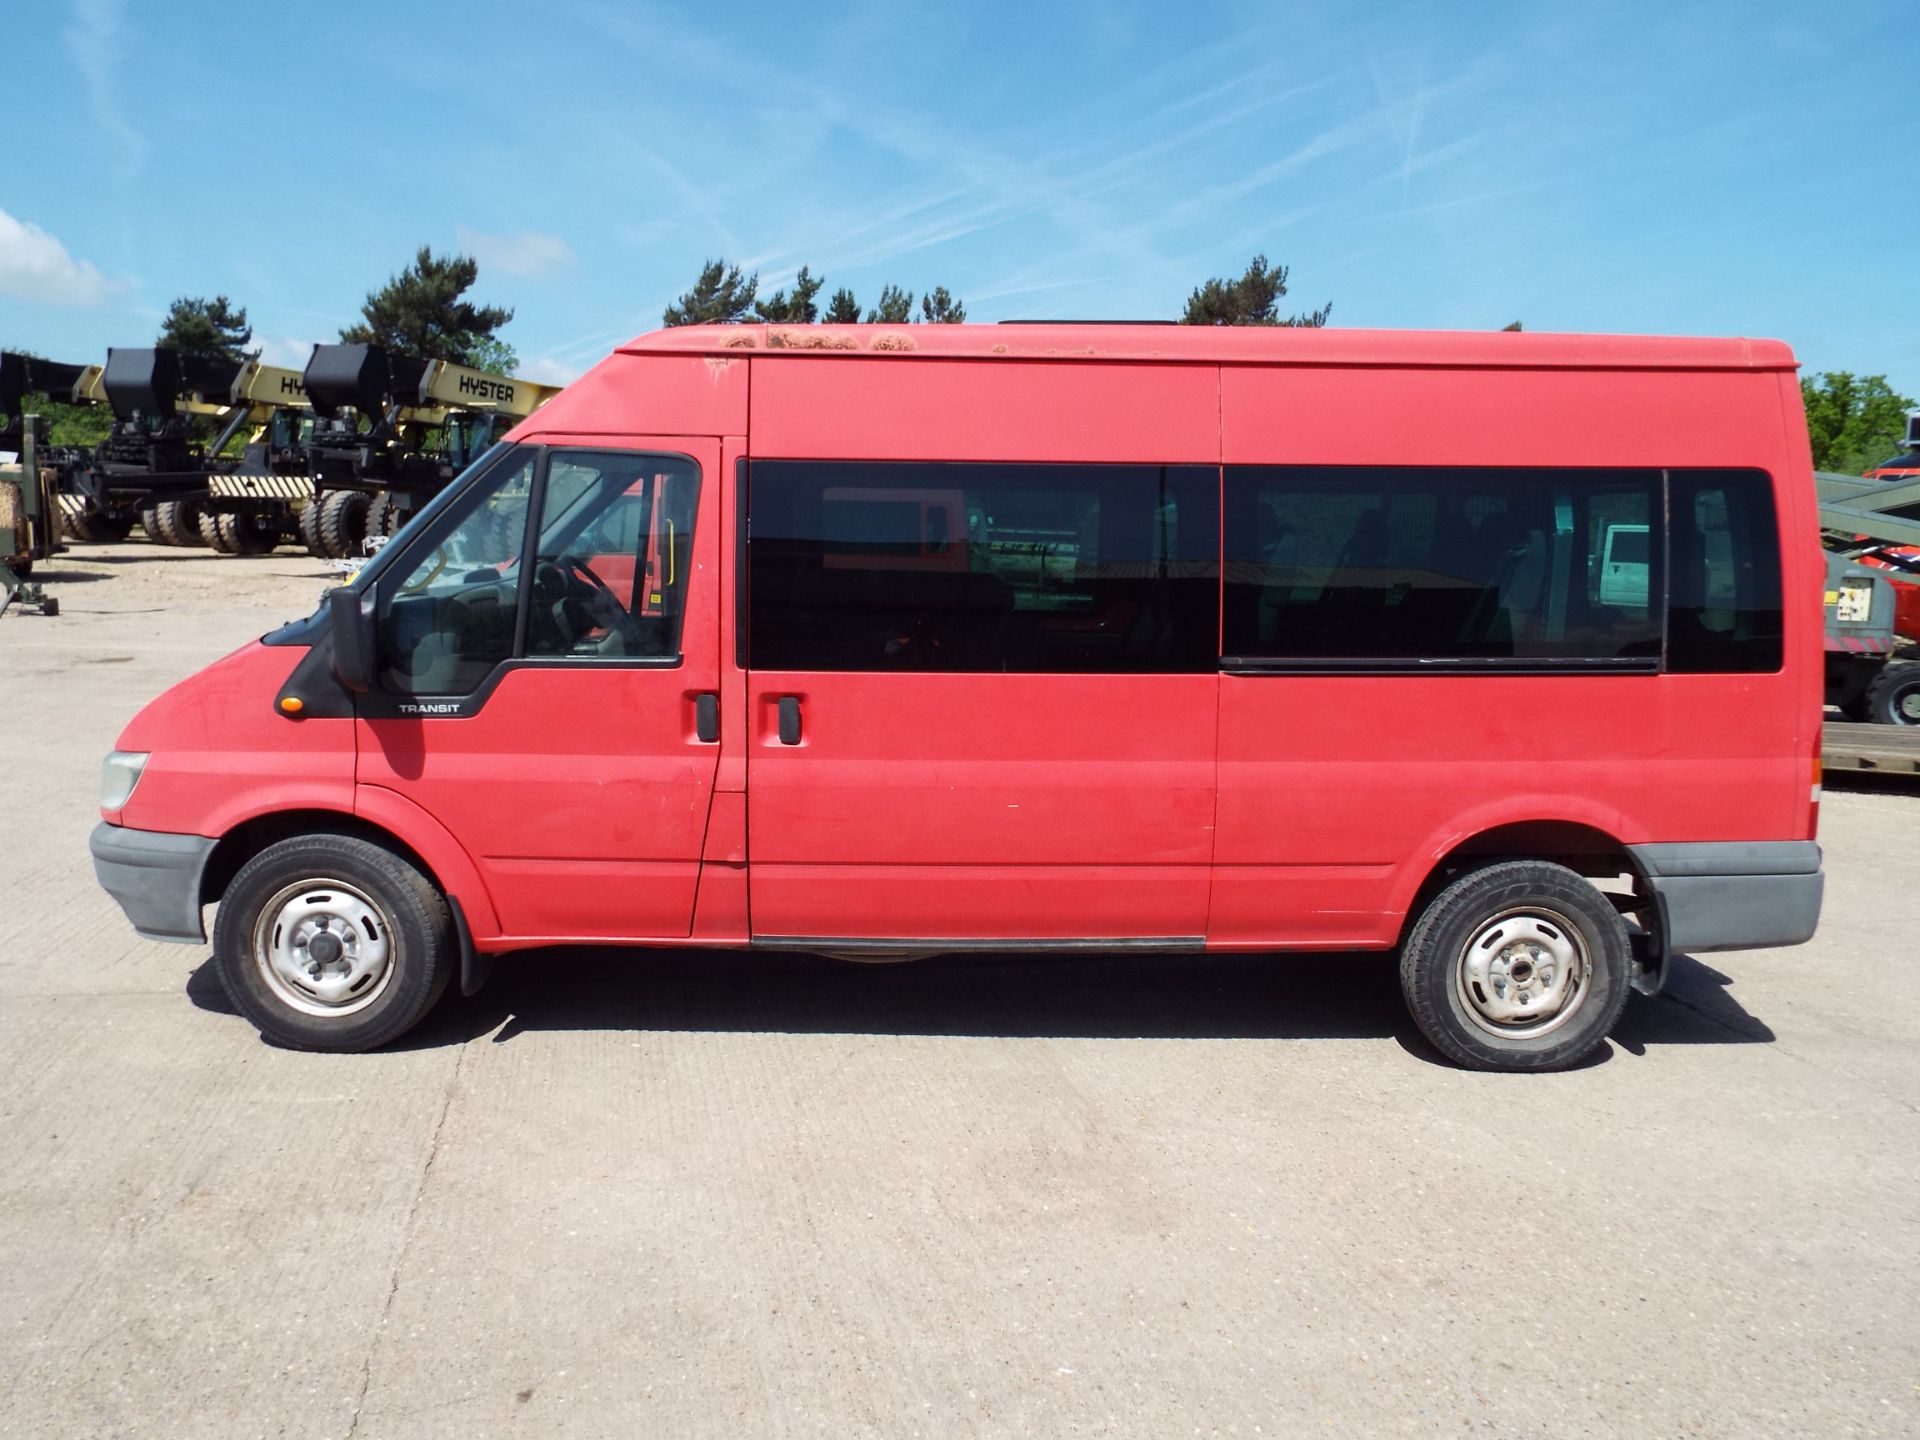 Ford Transit 9 Seat Minibus - Image 8 of 18